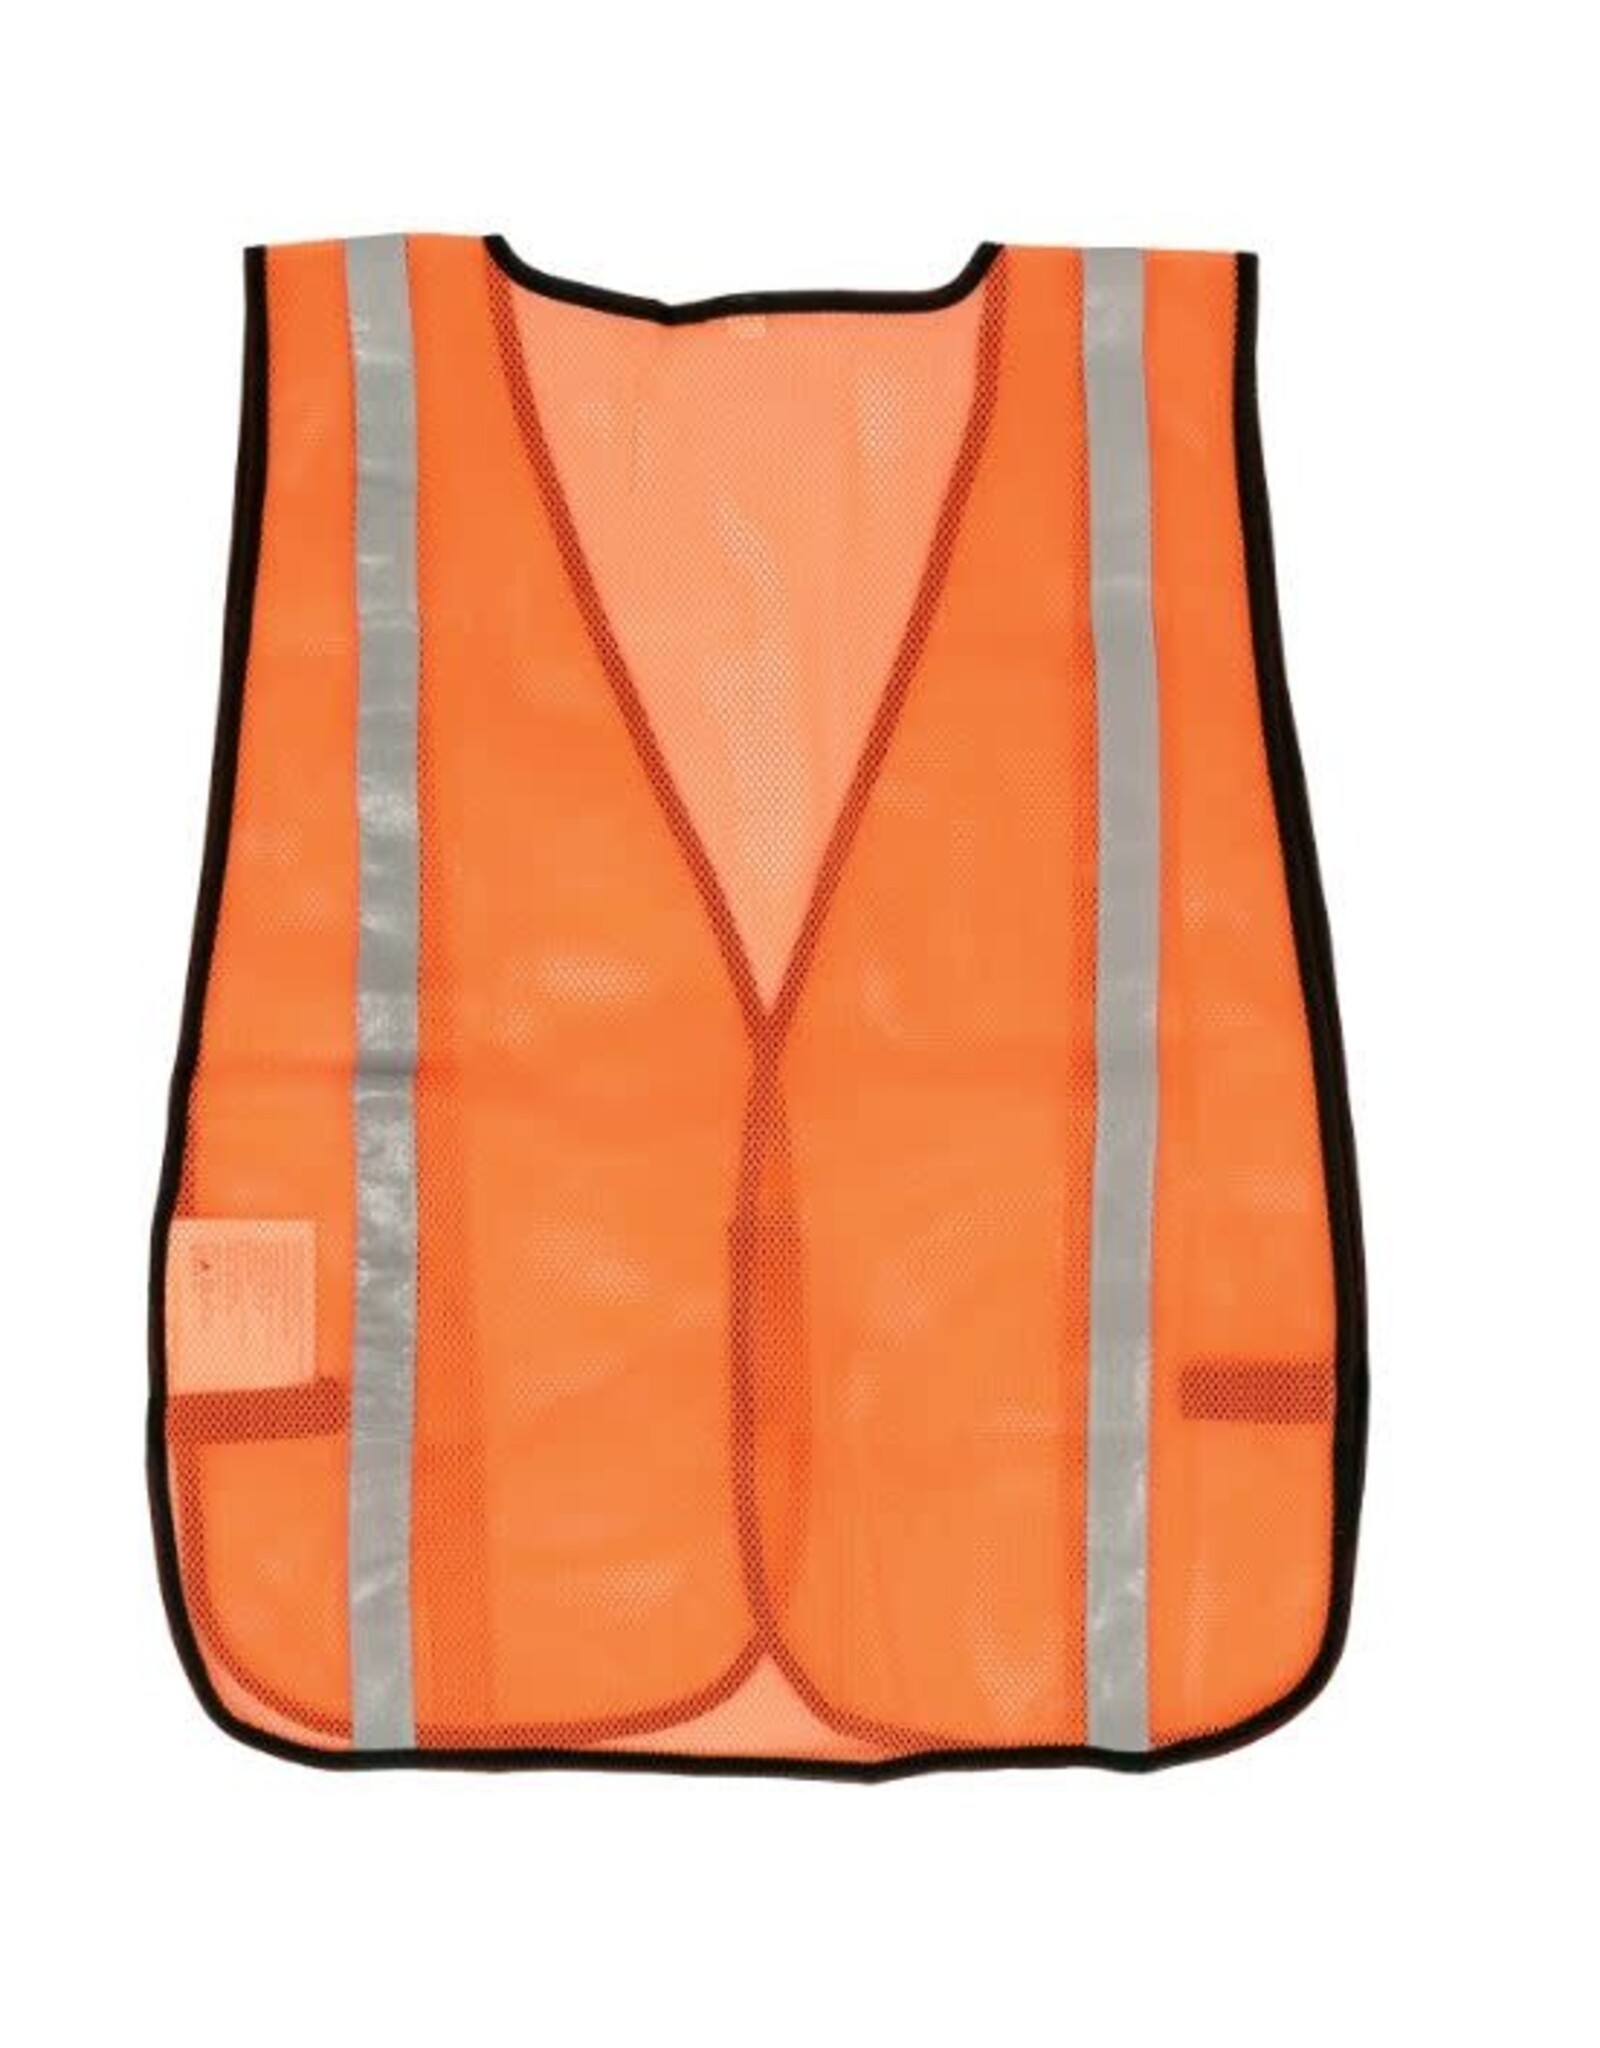 Mesh Traffic Safety Vest, One Size, Orange